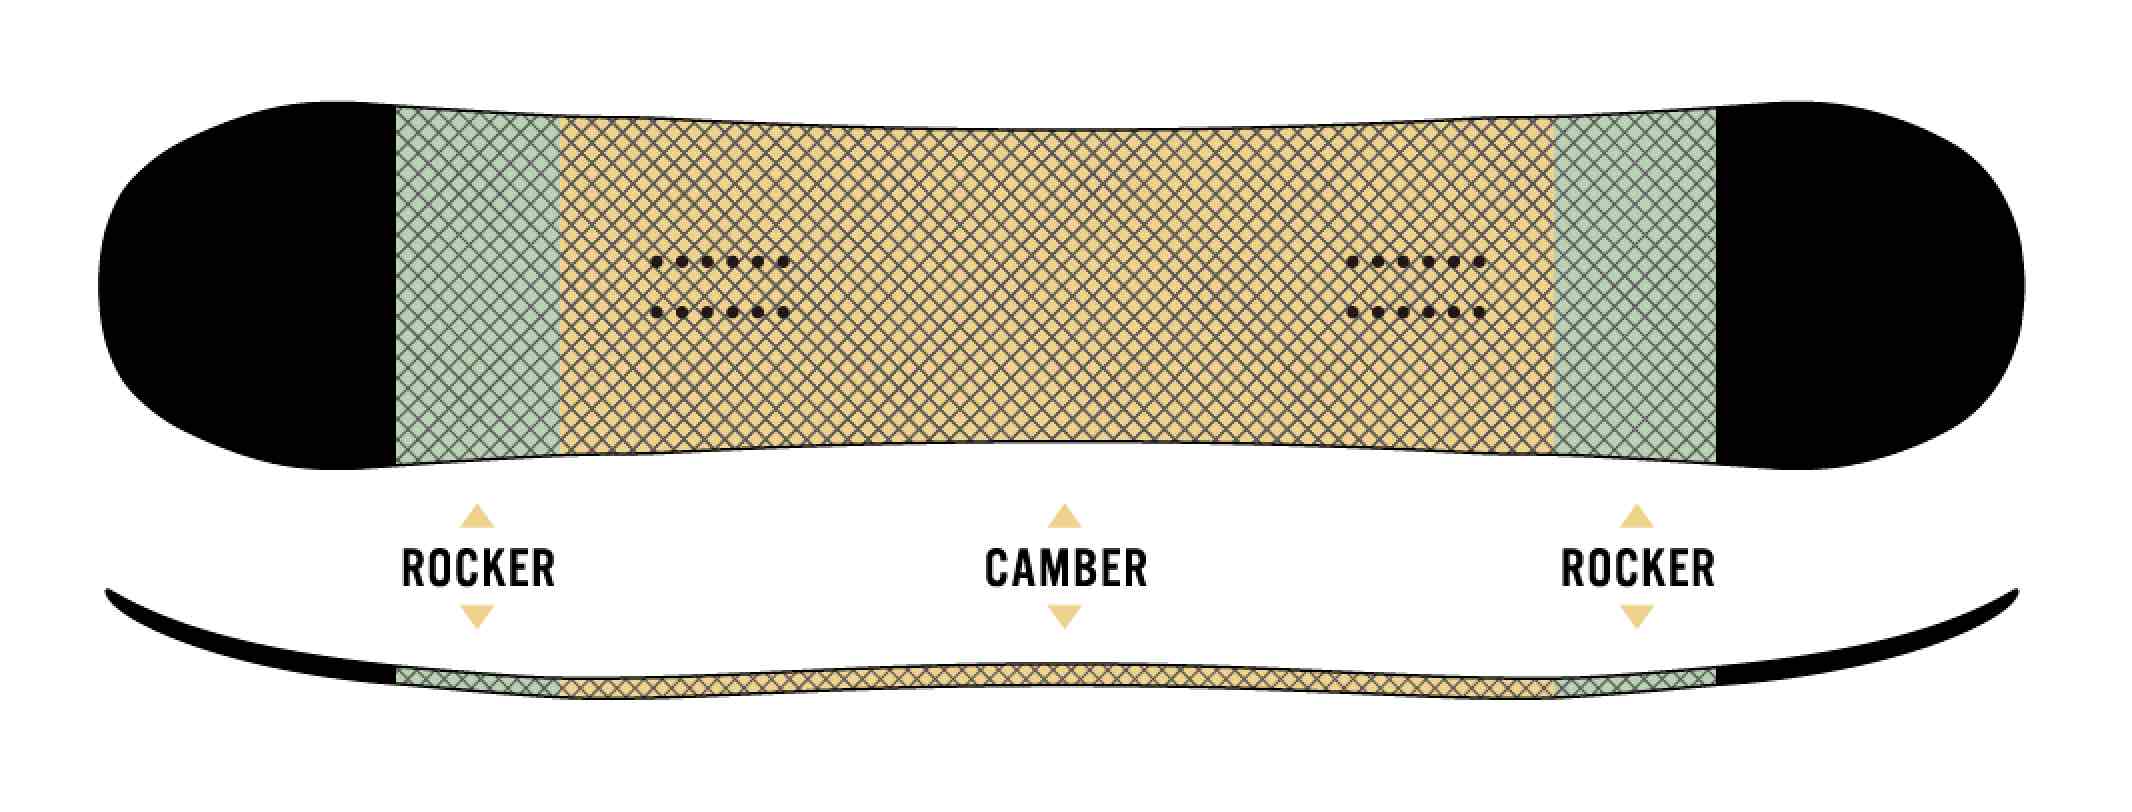 板的中央部分是弧度，CAMROCK在鼻子和尾巴上有一个小摇杆。它具有外倾角擅长的锋利边缘，高排斥力，以及摇臂特有的良好机动性。